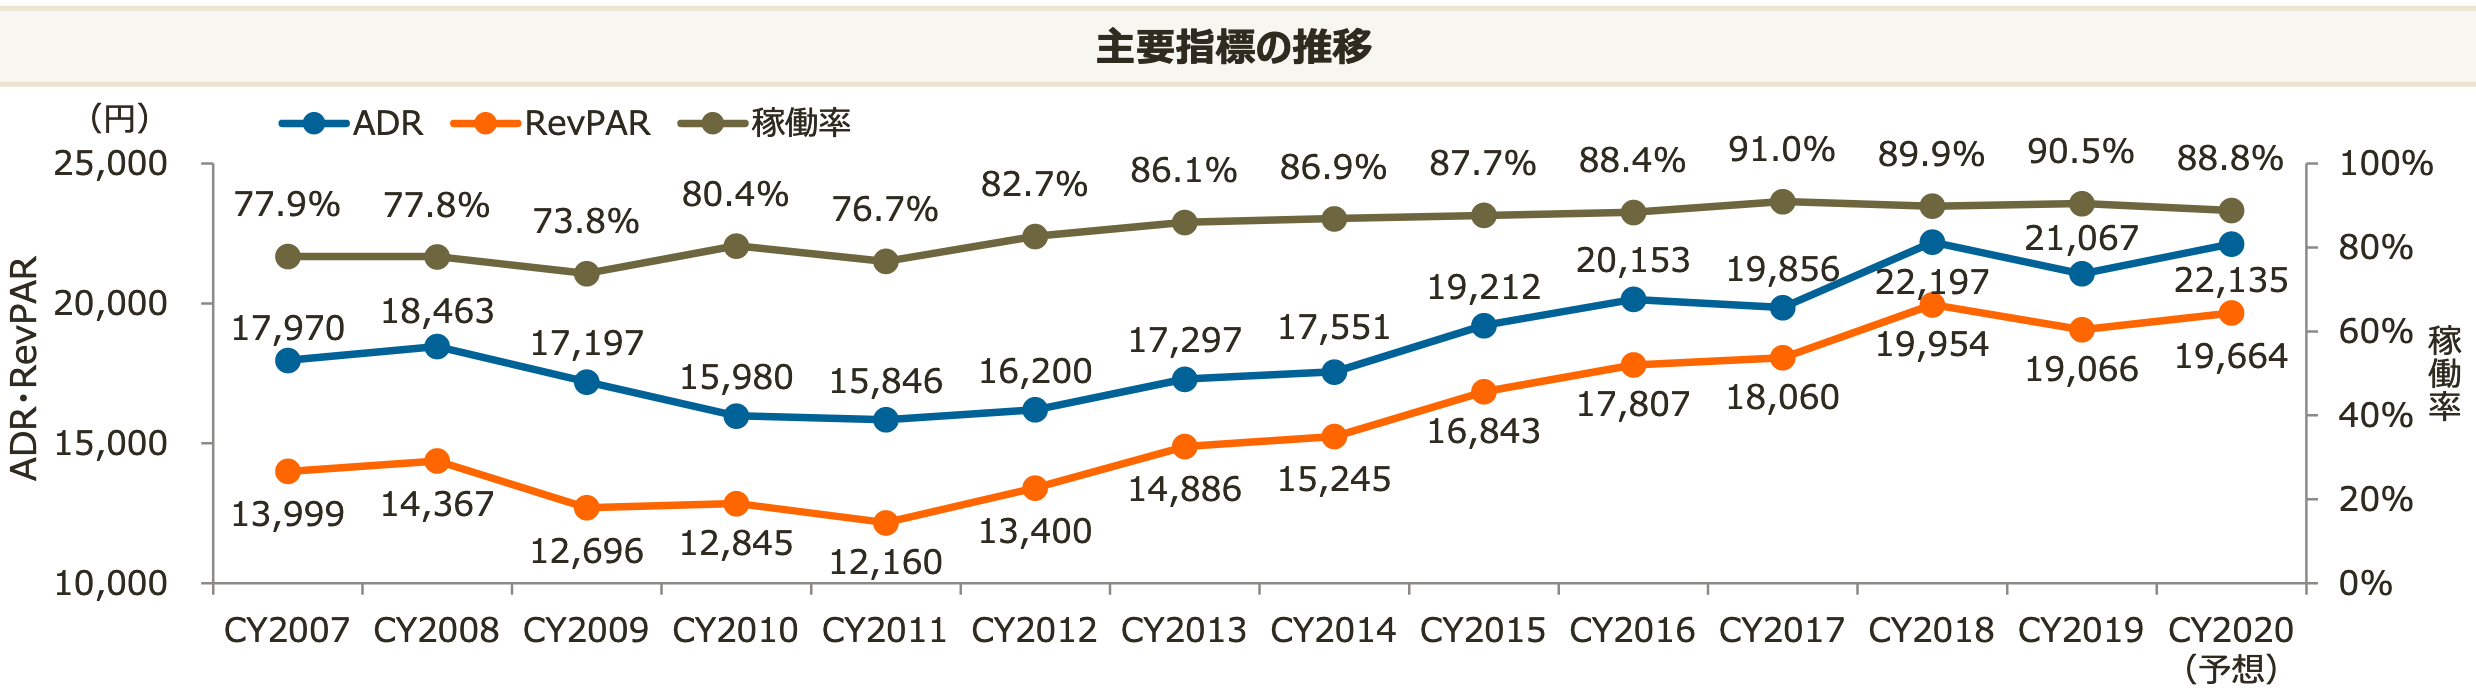 ジャパン・ホテルの「HMJ５ホテル」の稼働率、ADR、RevPER、売上